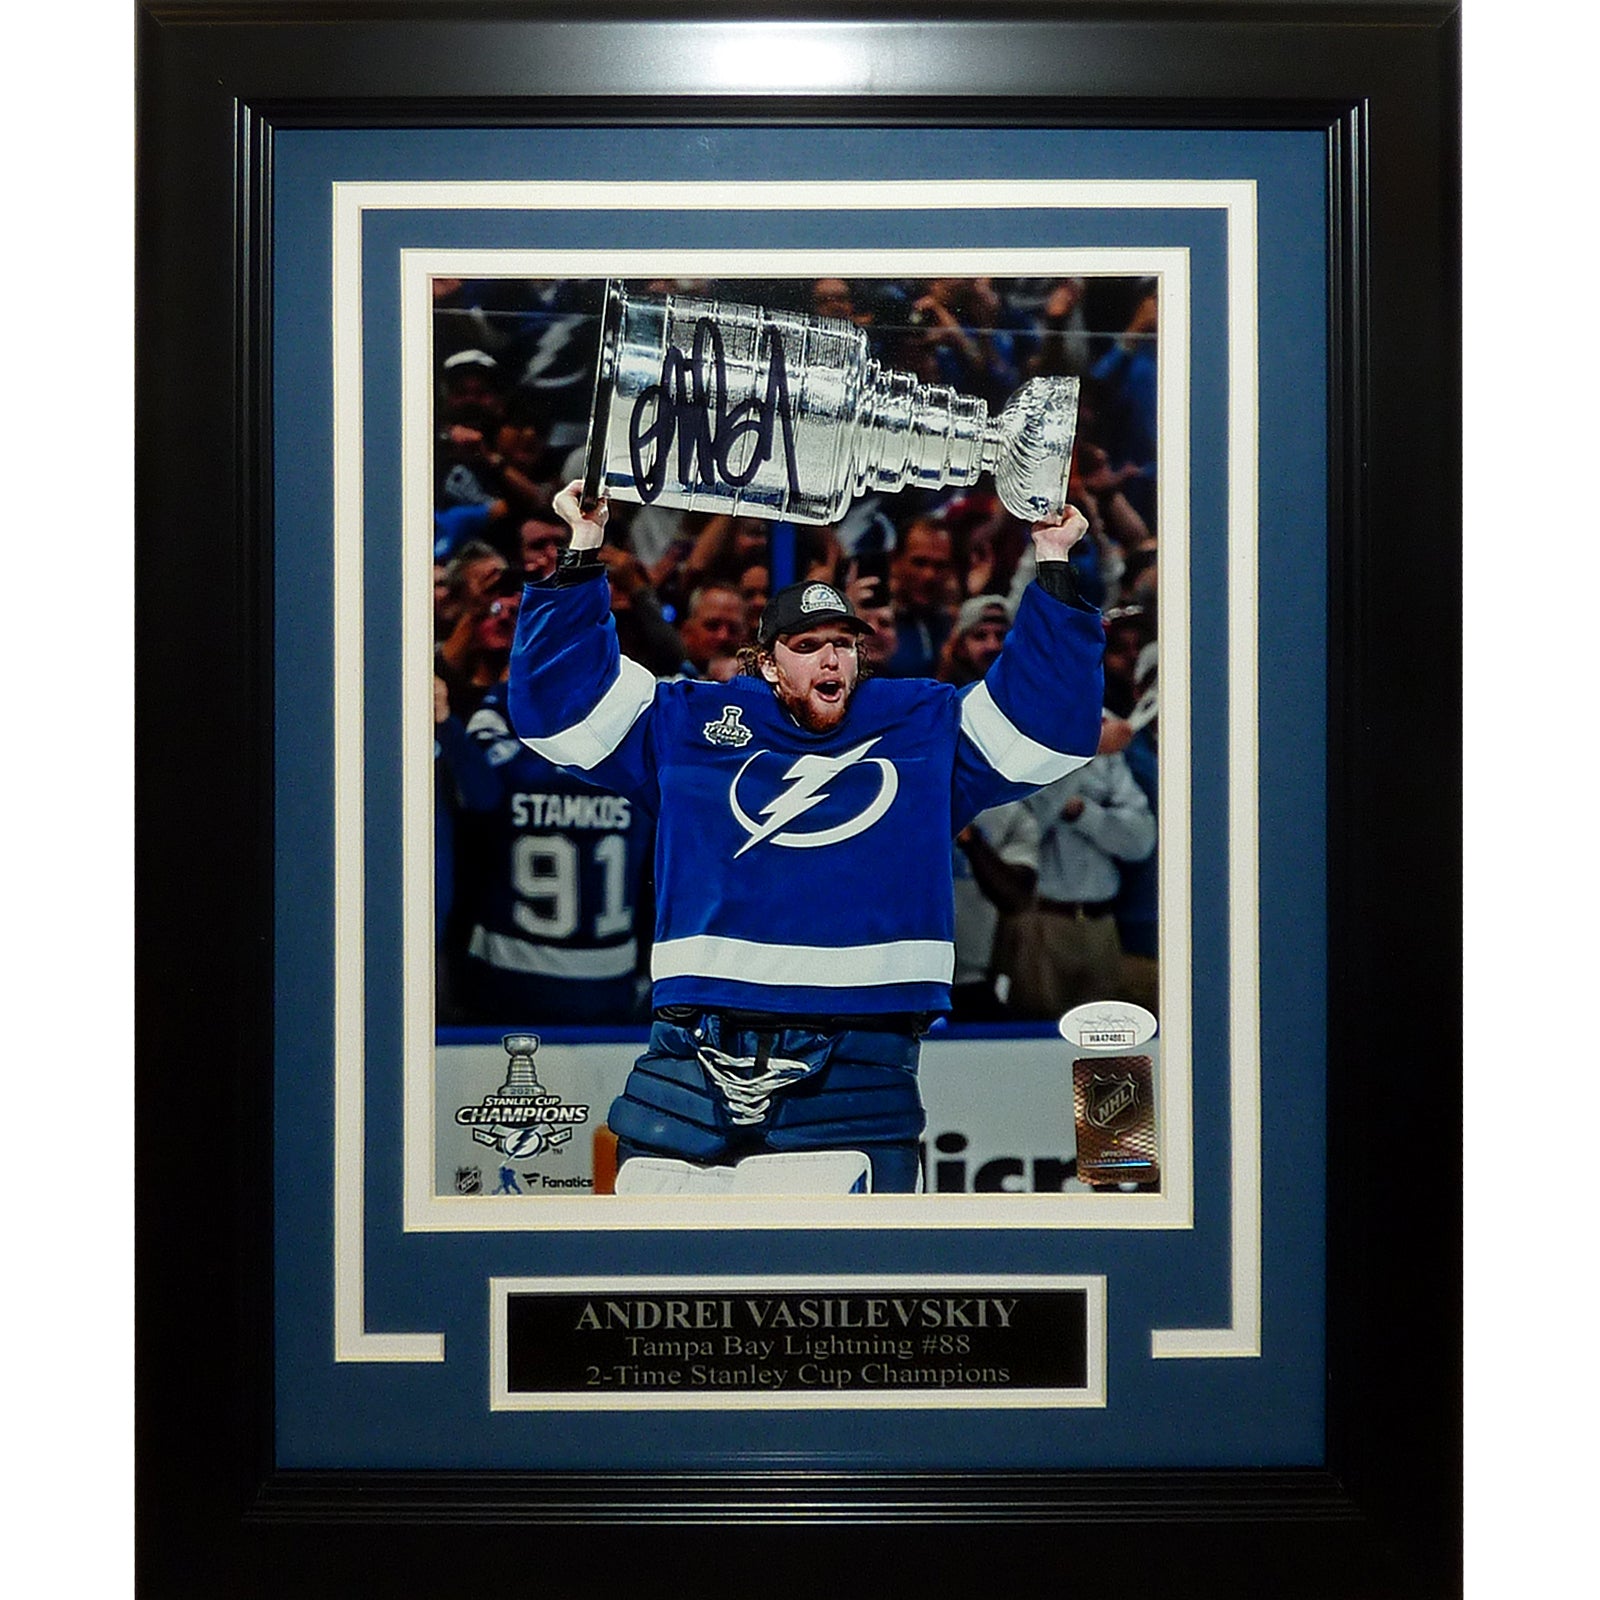 Andrei Vasilevskiy Autographed Tampa Bay Lightning (Stanley Cup Trophy) Framed 8x10 Photo - JSA